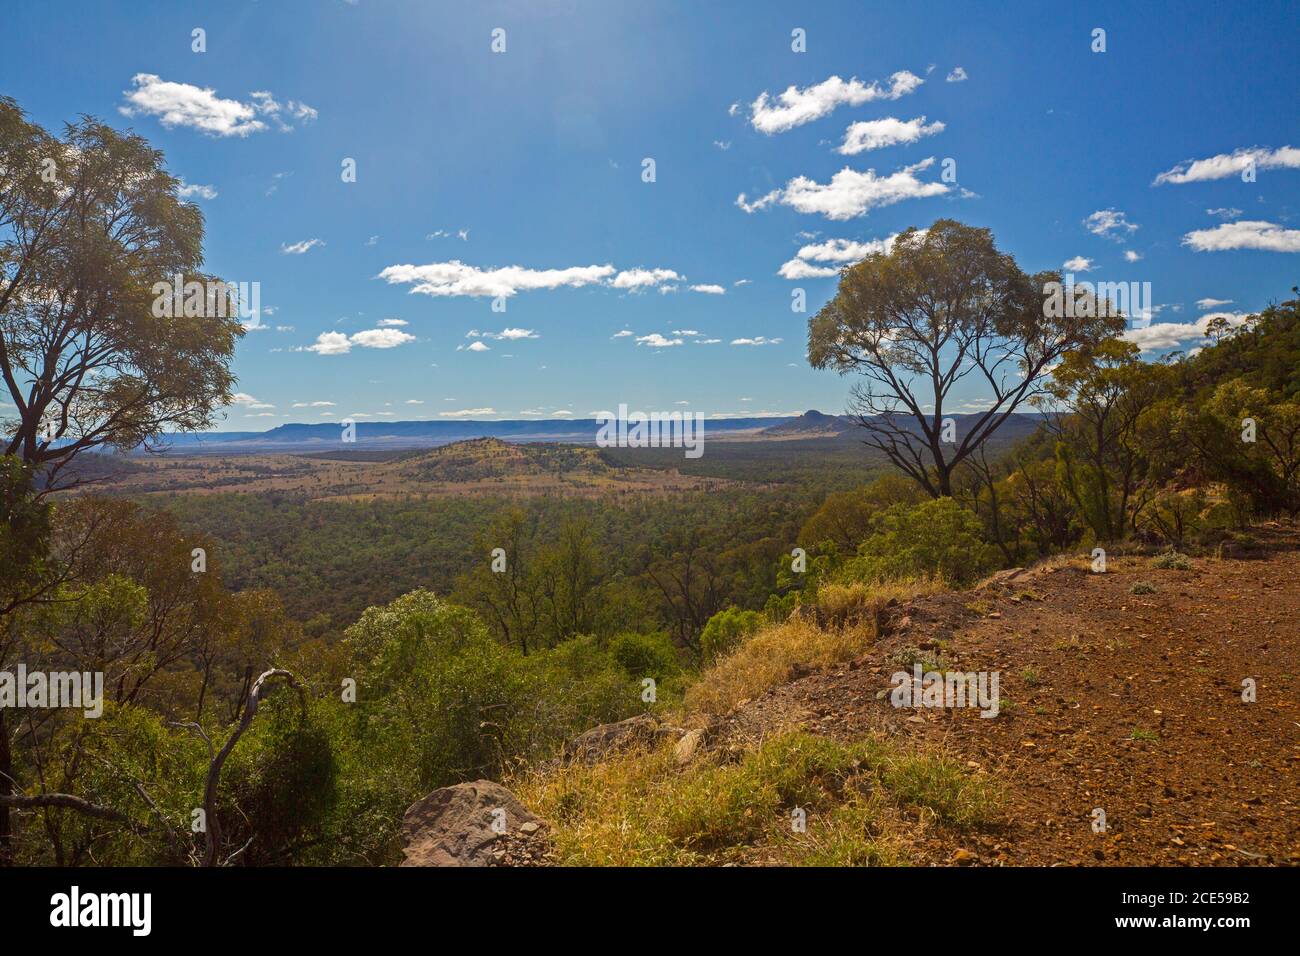 Paysage de collines et de vastes forêts d'eucalyptus vues de haut Guettez l'extrémité sud de la vallée d'Arcadia dans le centre du Queensland Australie Banque D'Images